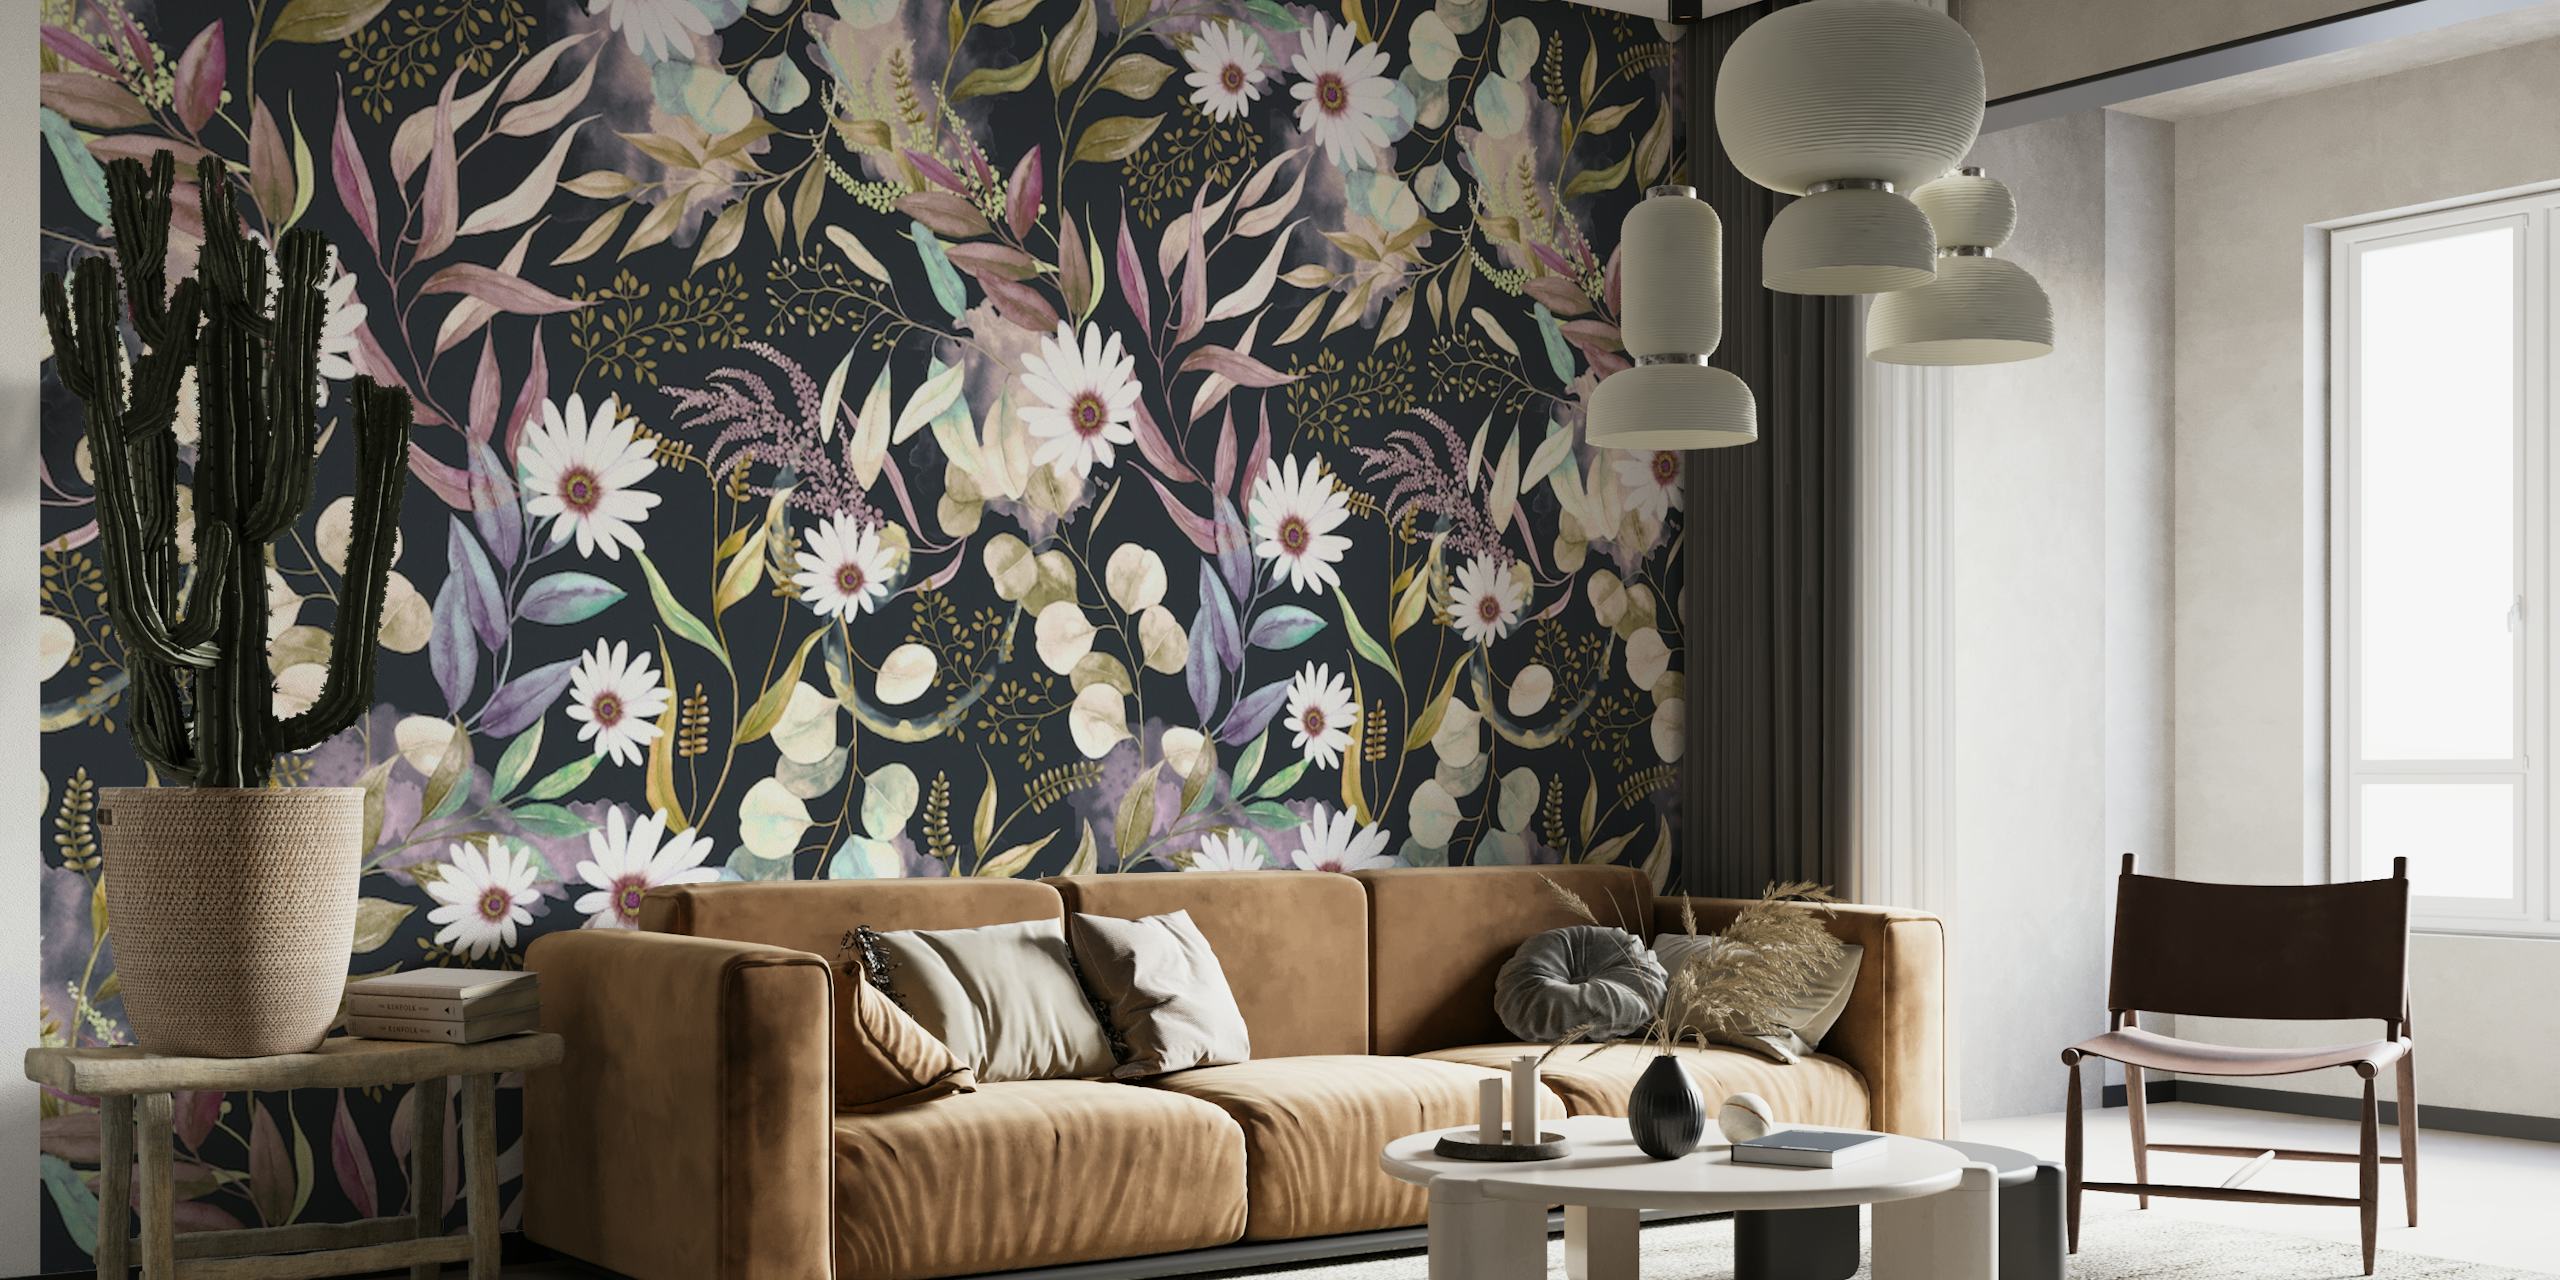 Fotomural vinílico de parede enigmático com padrão floral escuro de happywall.com